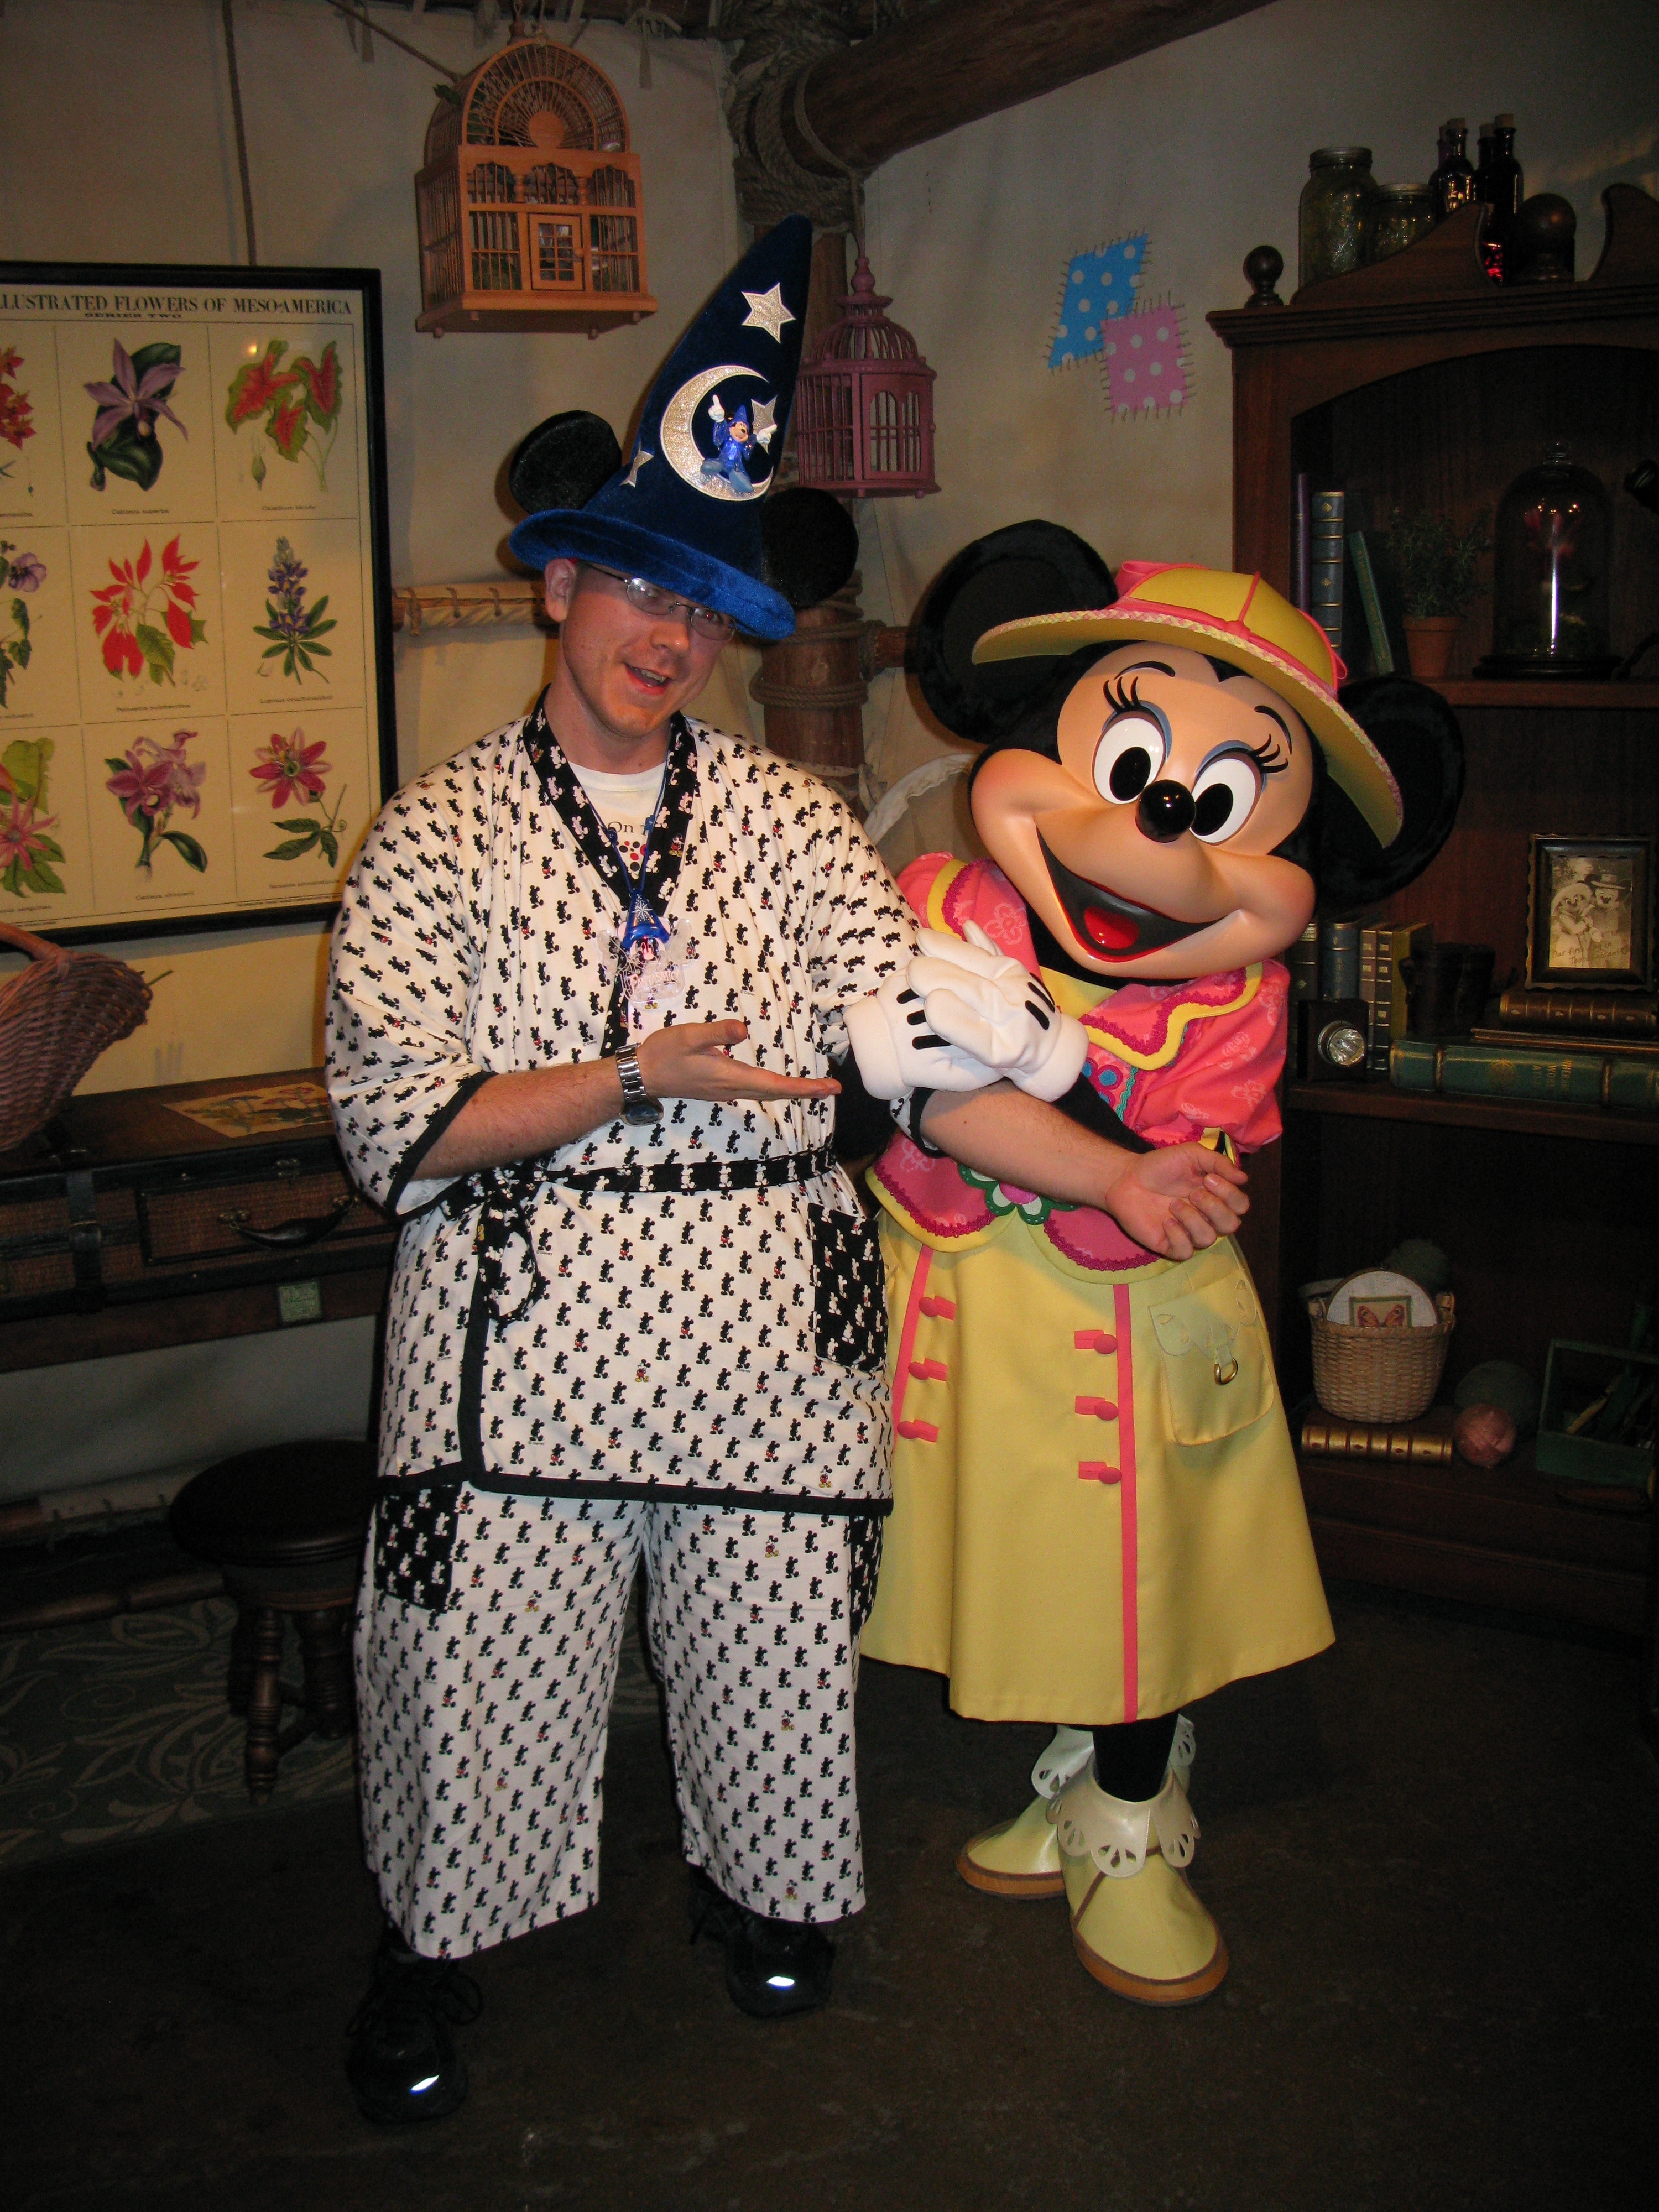 Minnie loves Mickey